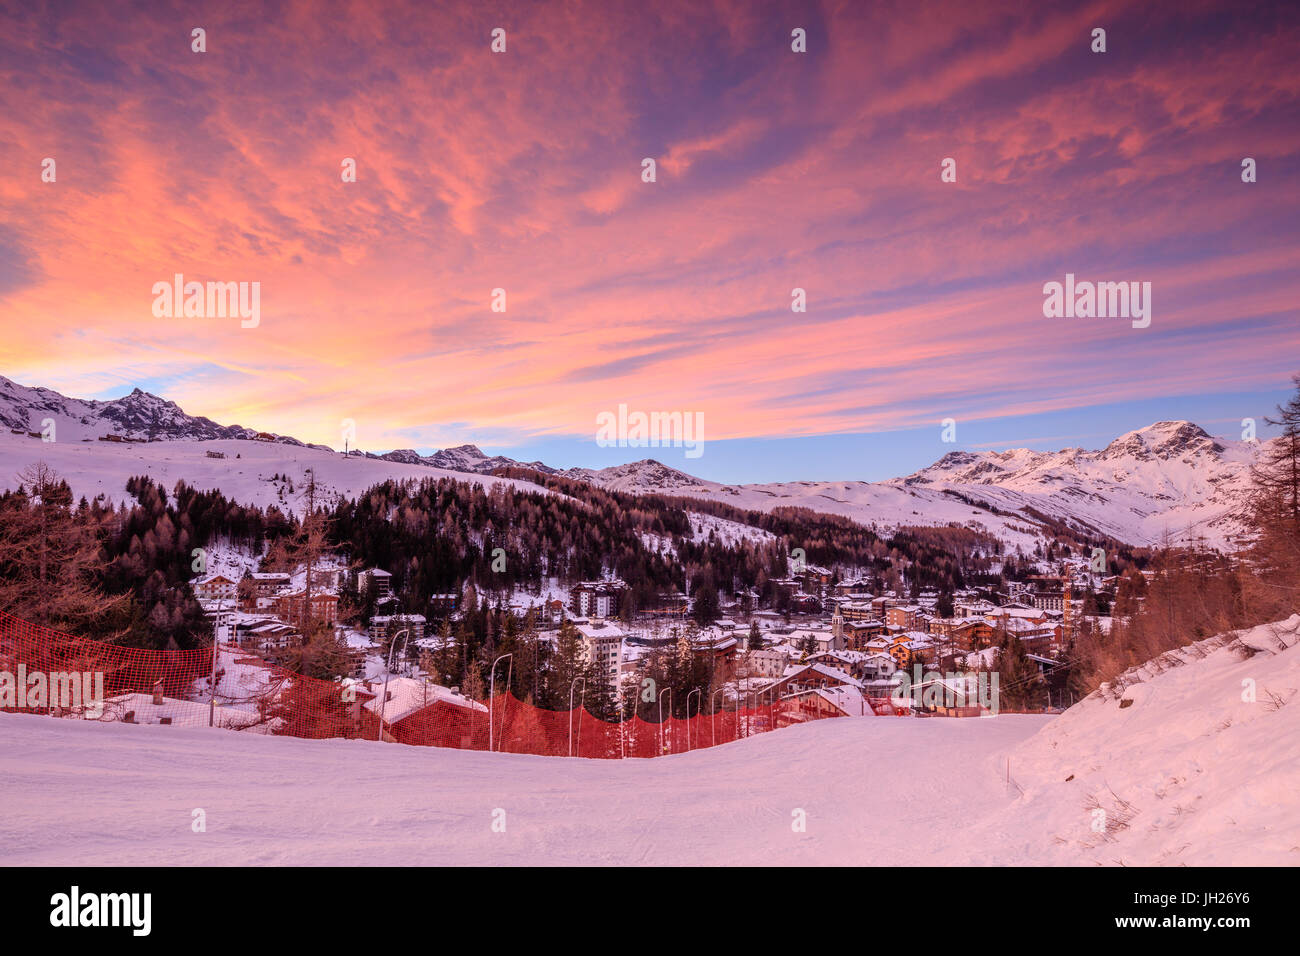 Nubes rosadas al atardecer en la aldea alpina de Madesimo y las nevadas pistas de esquí, Valle Spluga, Valtellina, Lombardía, Italia Foto de stock